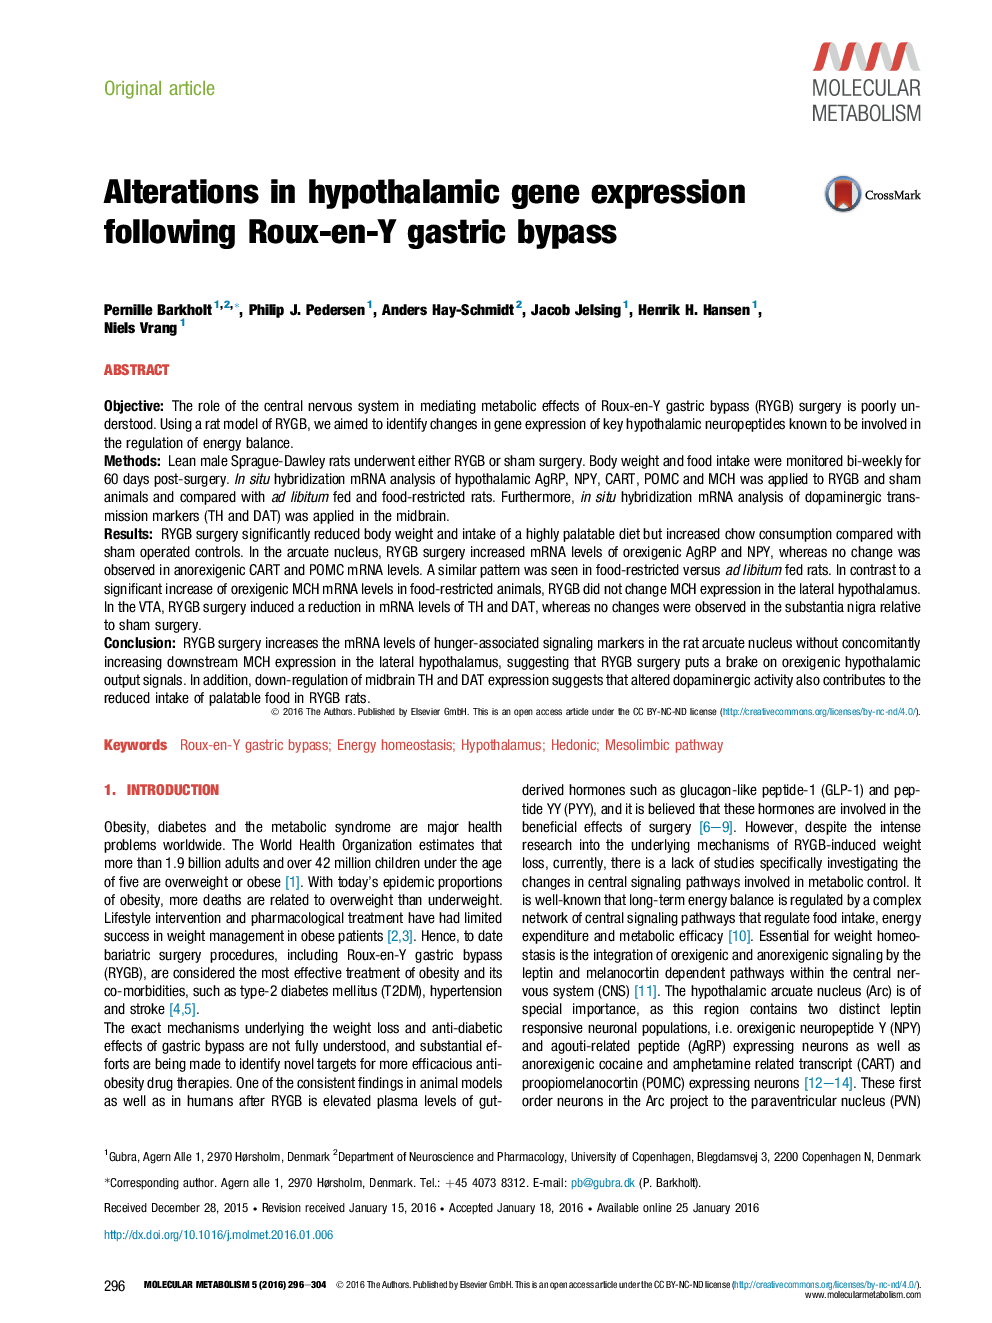 تغییرات در بیان ژن هیپوتالاموس زیر روش Roux-en-Y بای پس معده